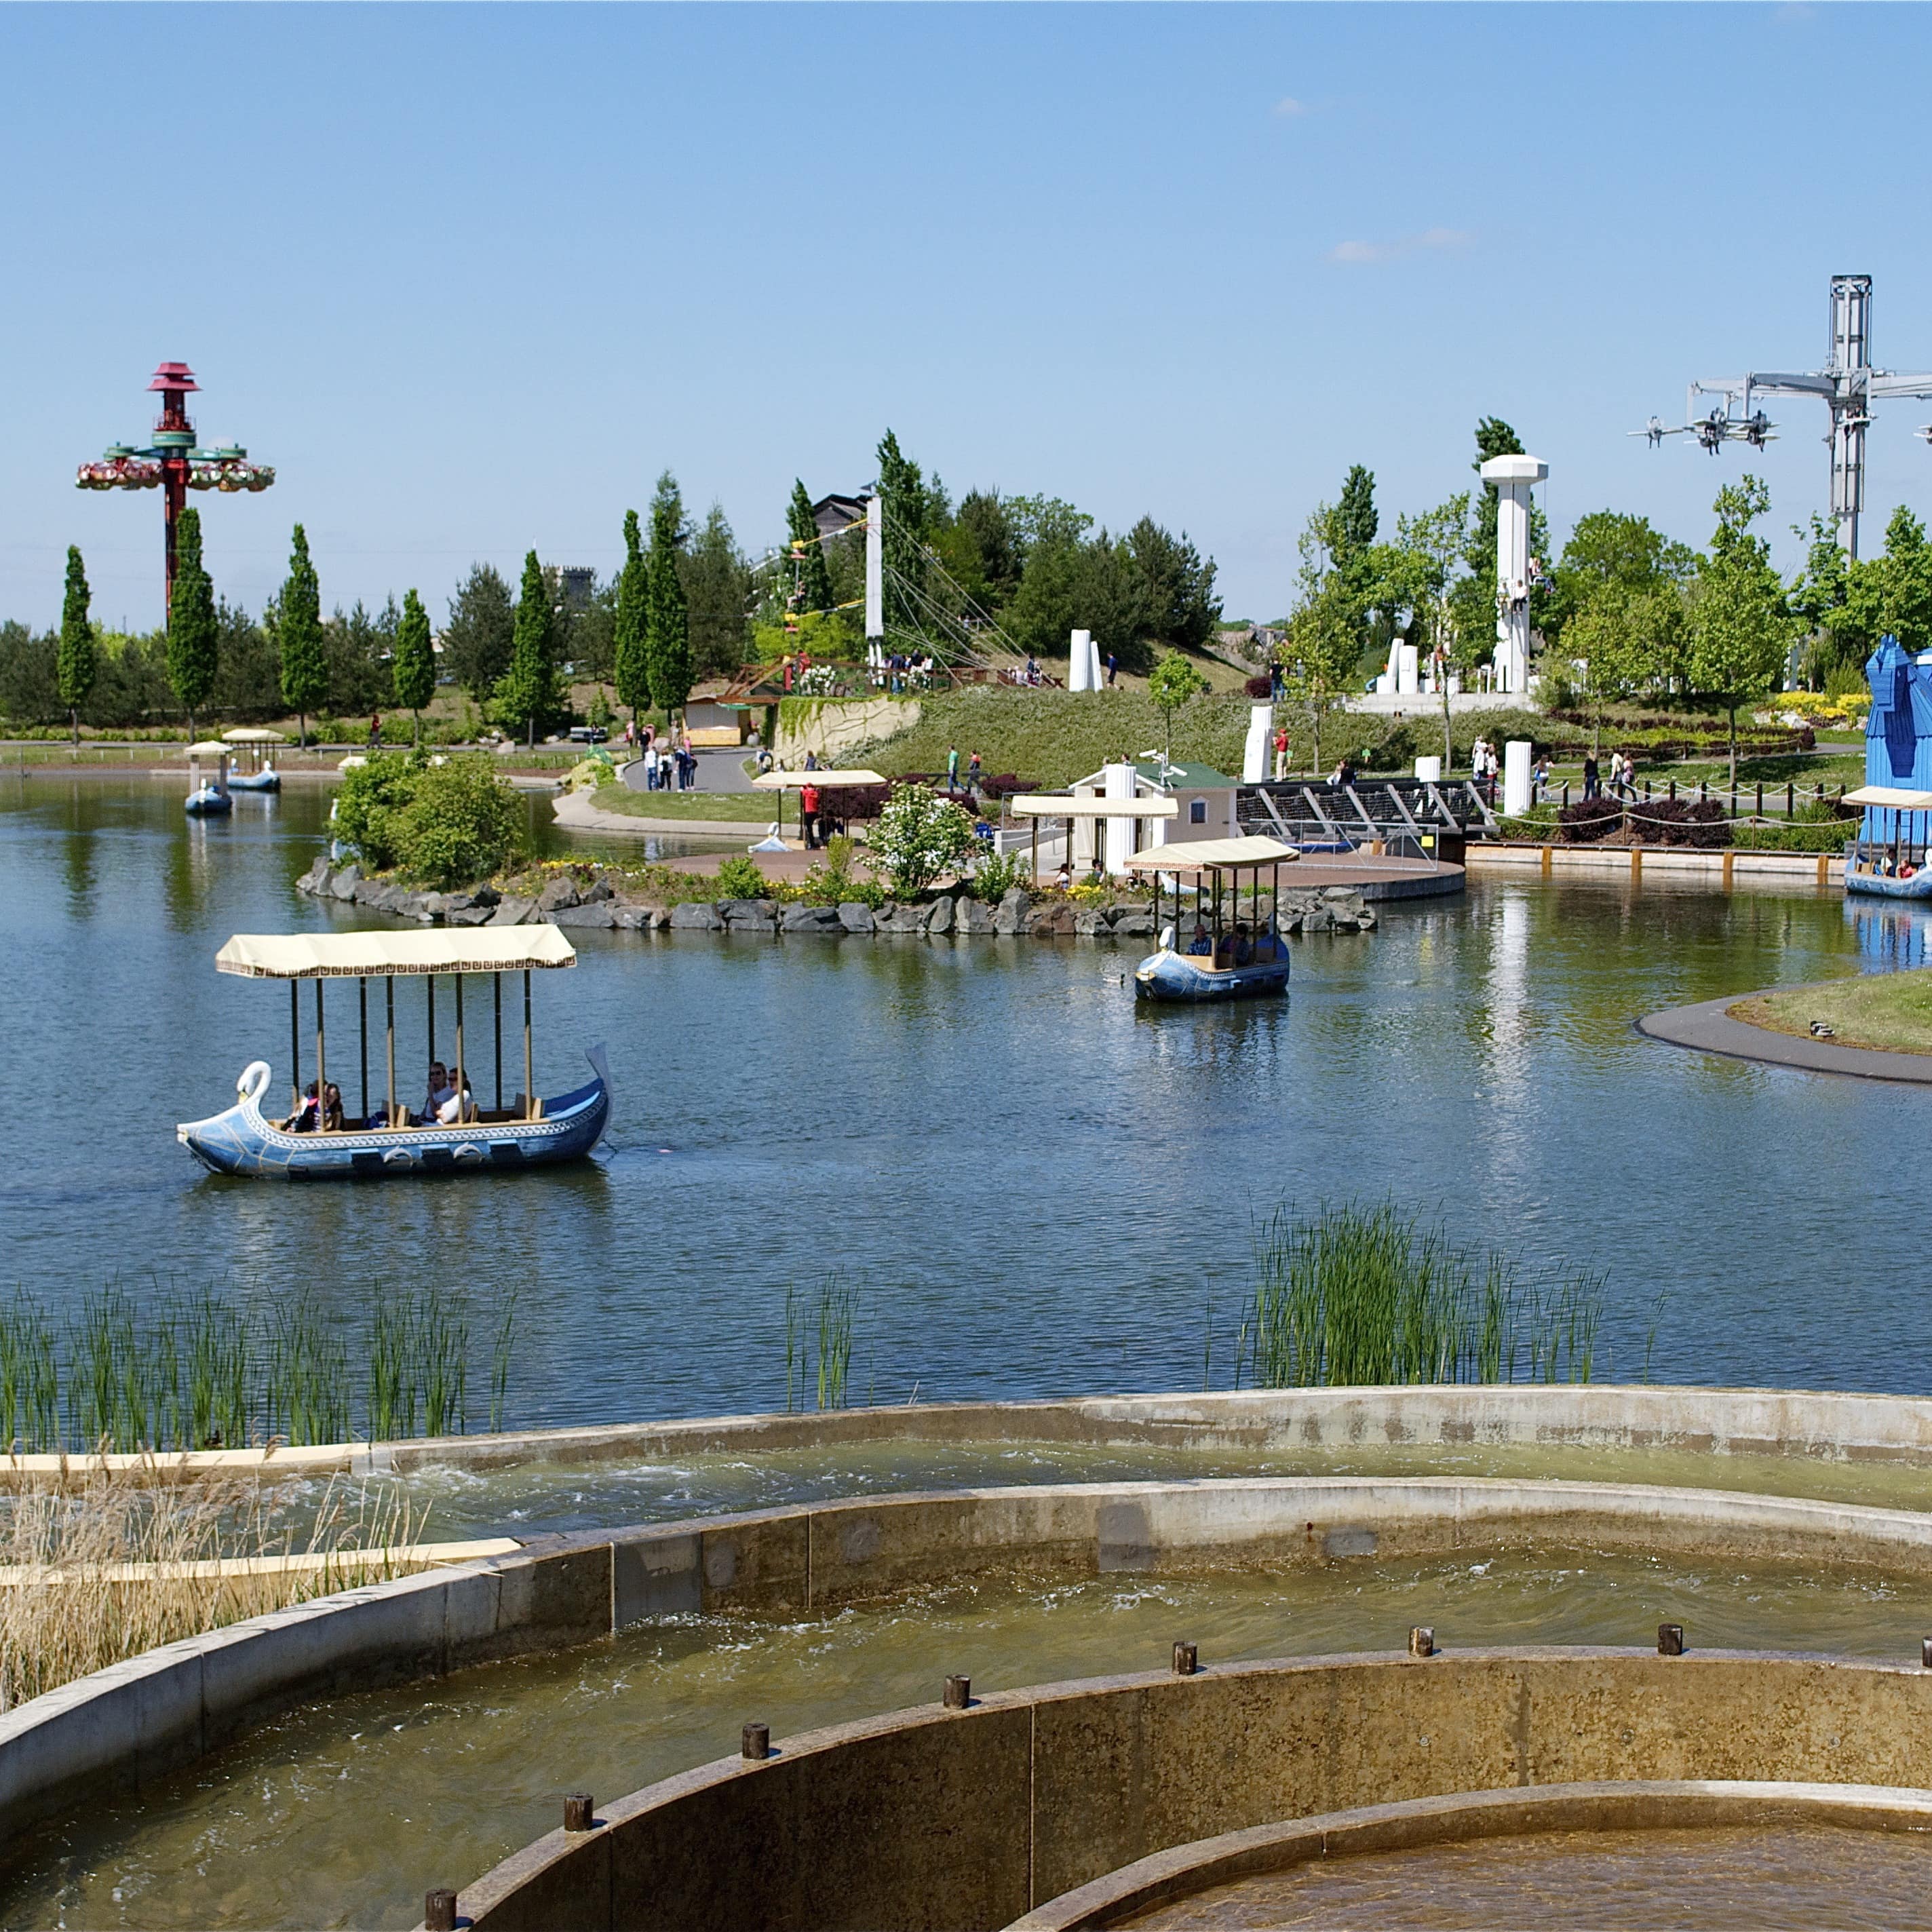 Blick über einen See mit kleinen Booten und Fahrattraktionen im Belantis Vergnügungspark.